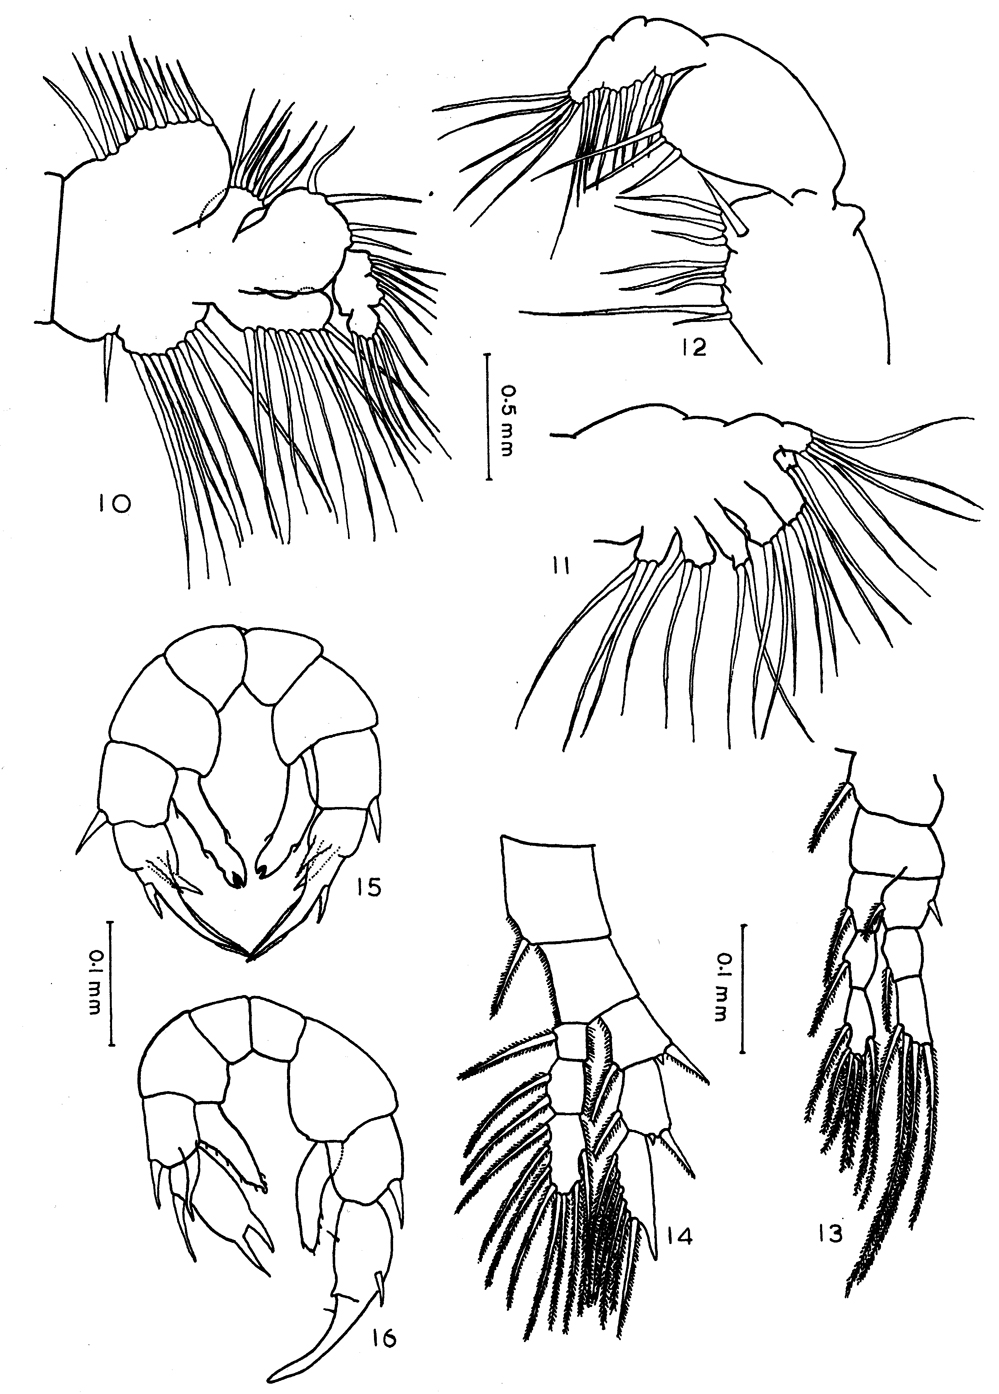 Espèce Archidiaptomus aroorus - Planche 2 de figures morphologiques